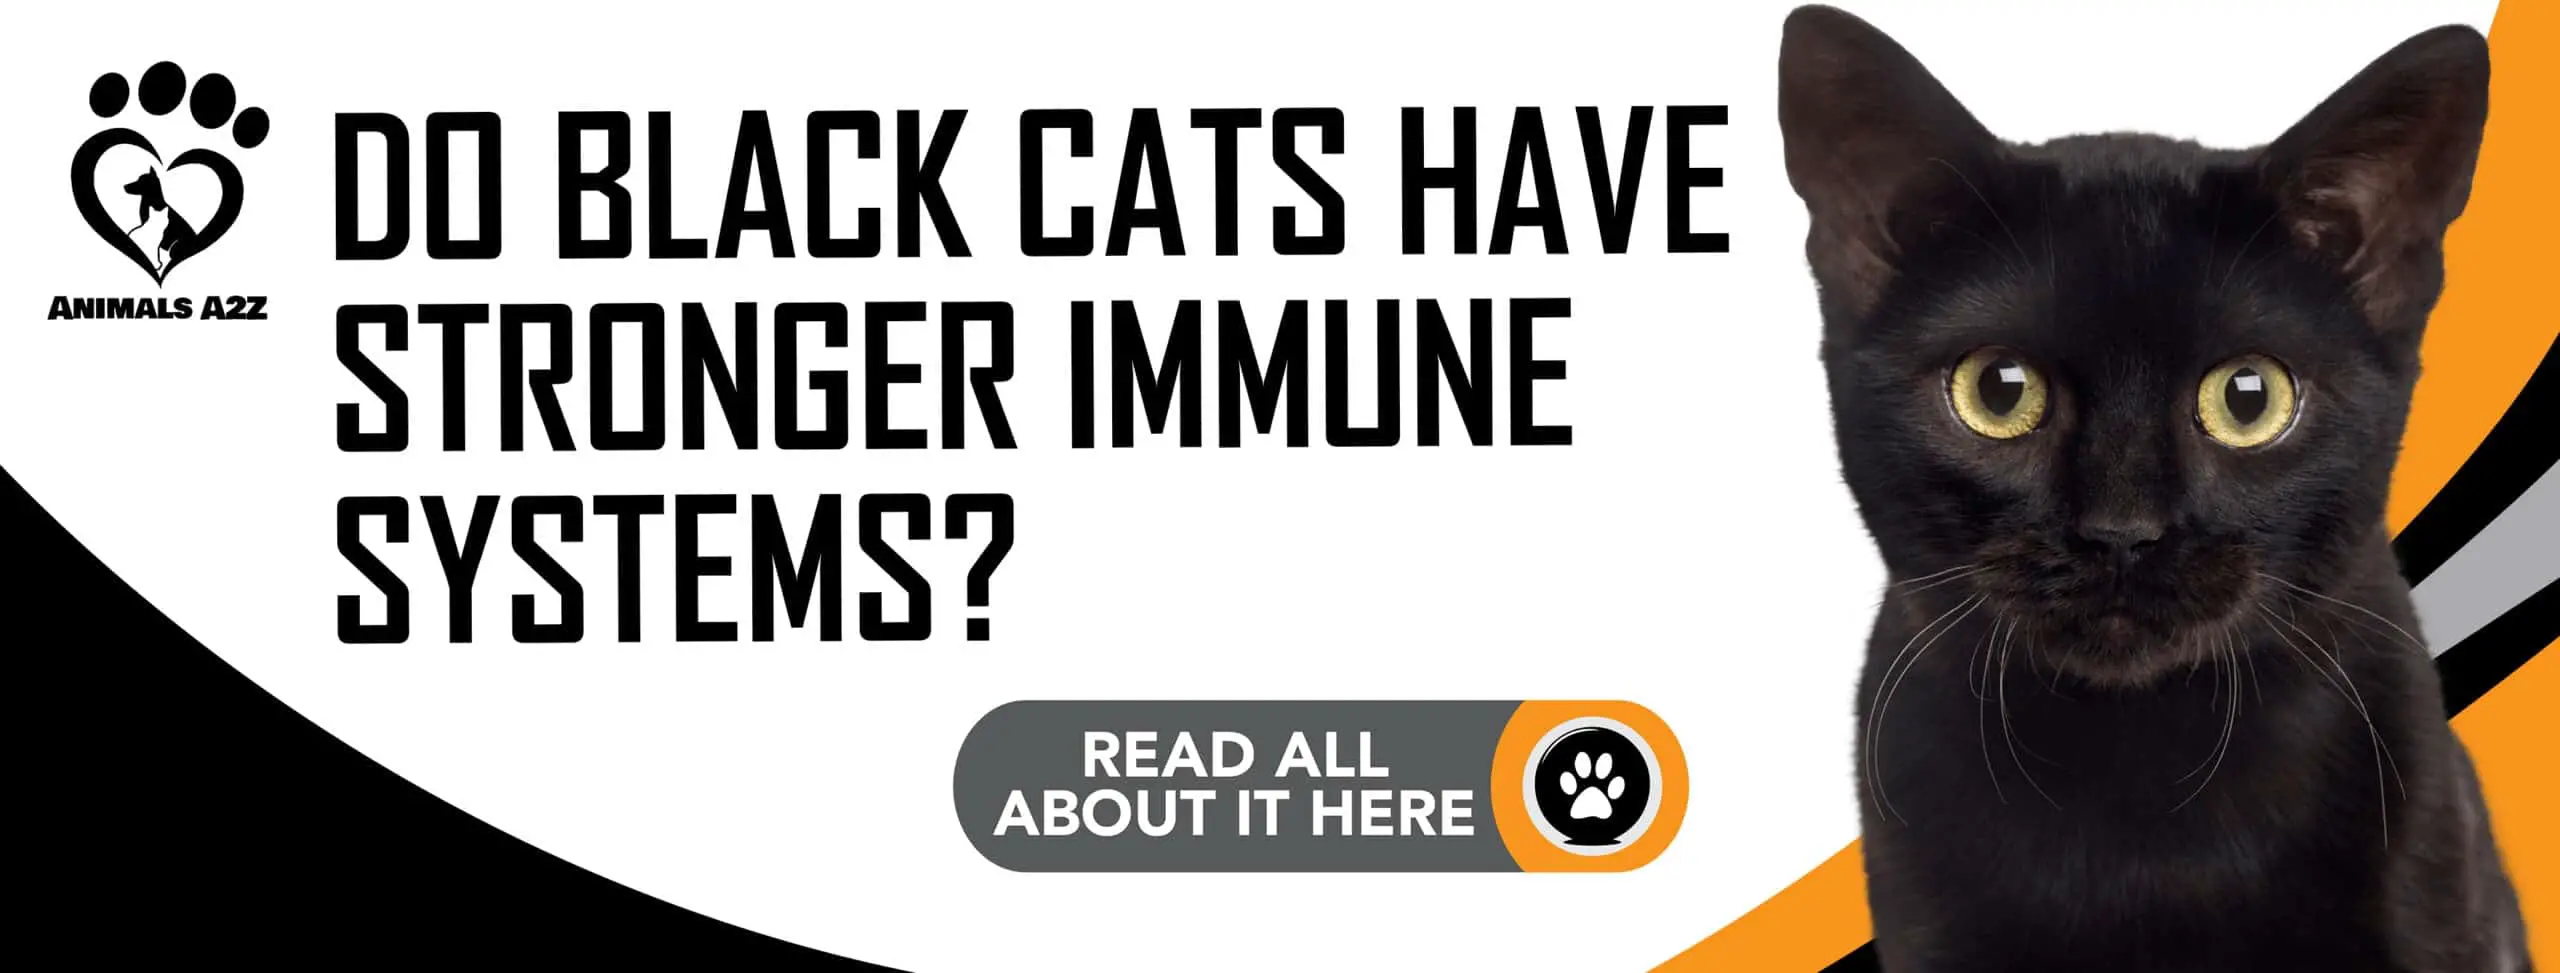 ¿Los gatos negros tienen un sistema inmunológico más fuerte?